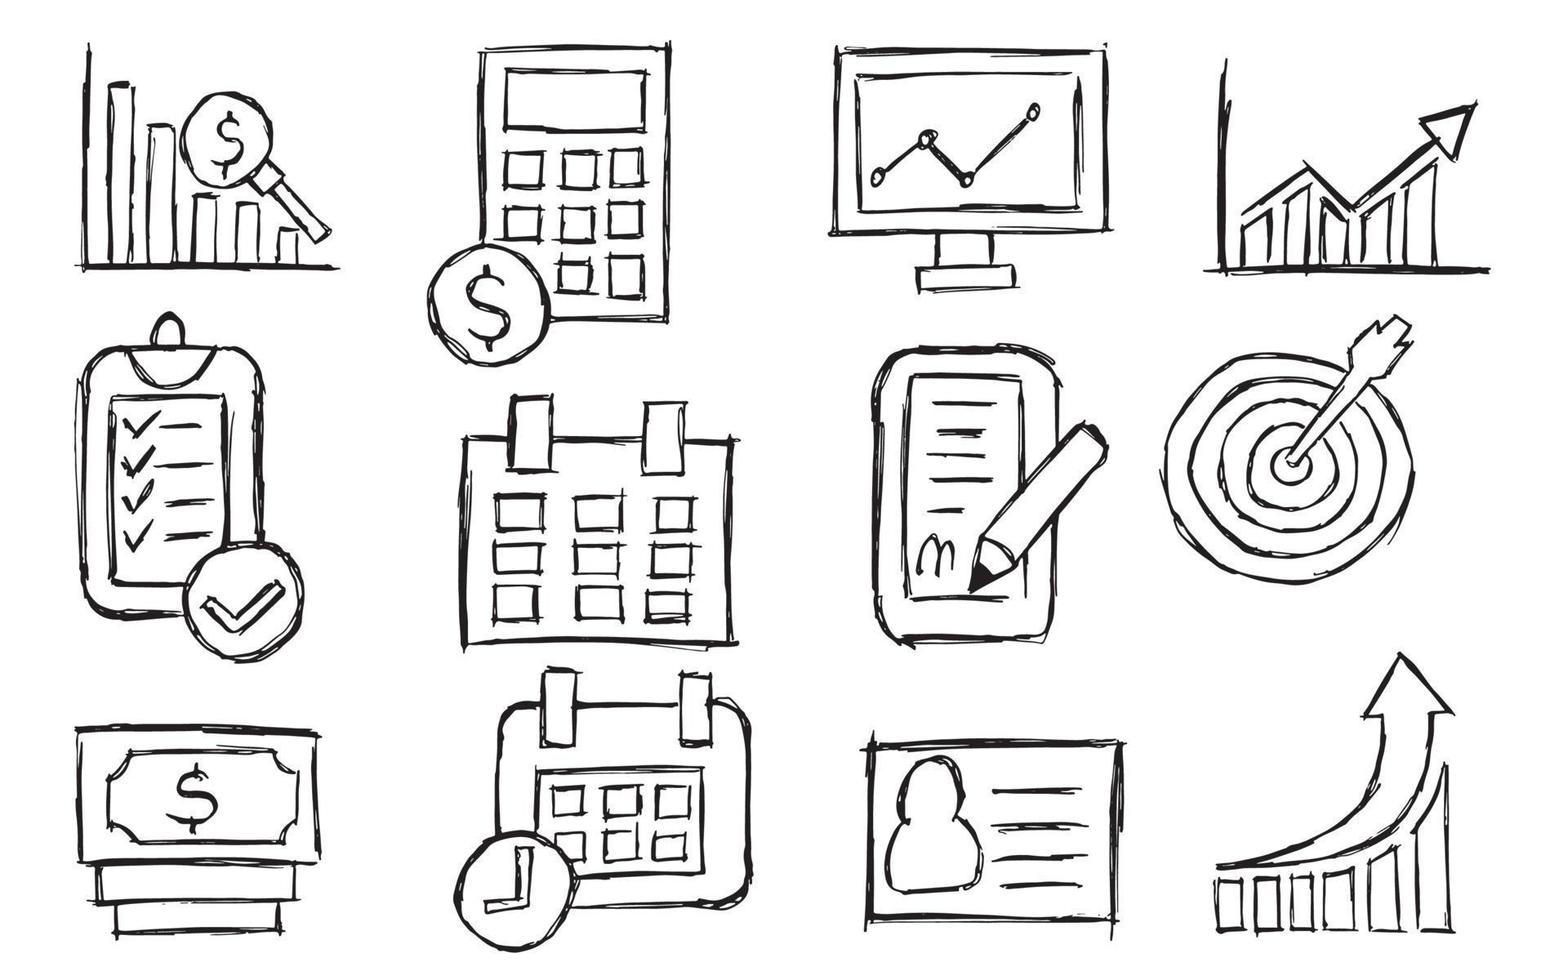 icono de negocio dibujado a mano y boceto y elemento infográfico, oficina a mano alzada y símbolo de finanzas vector